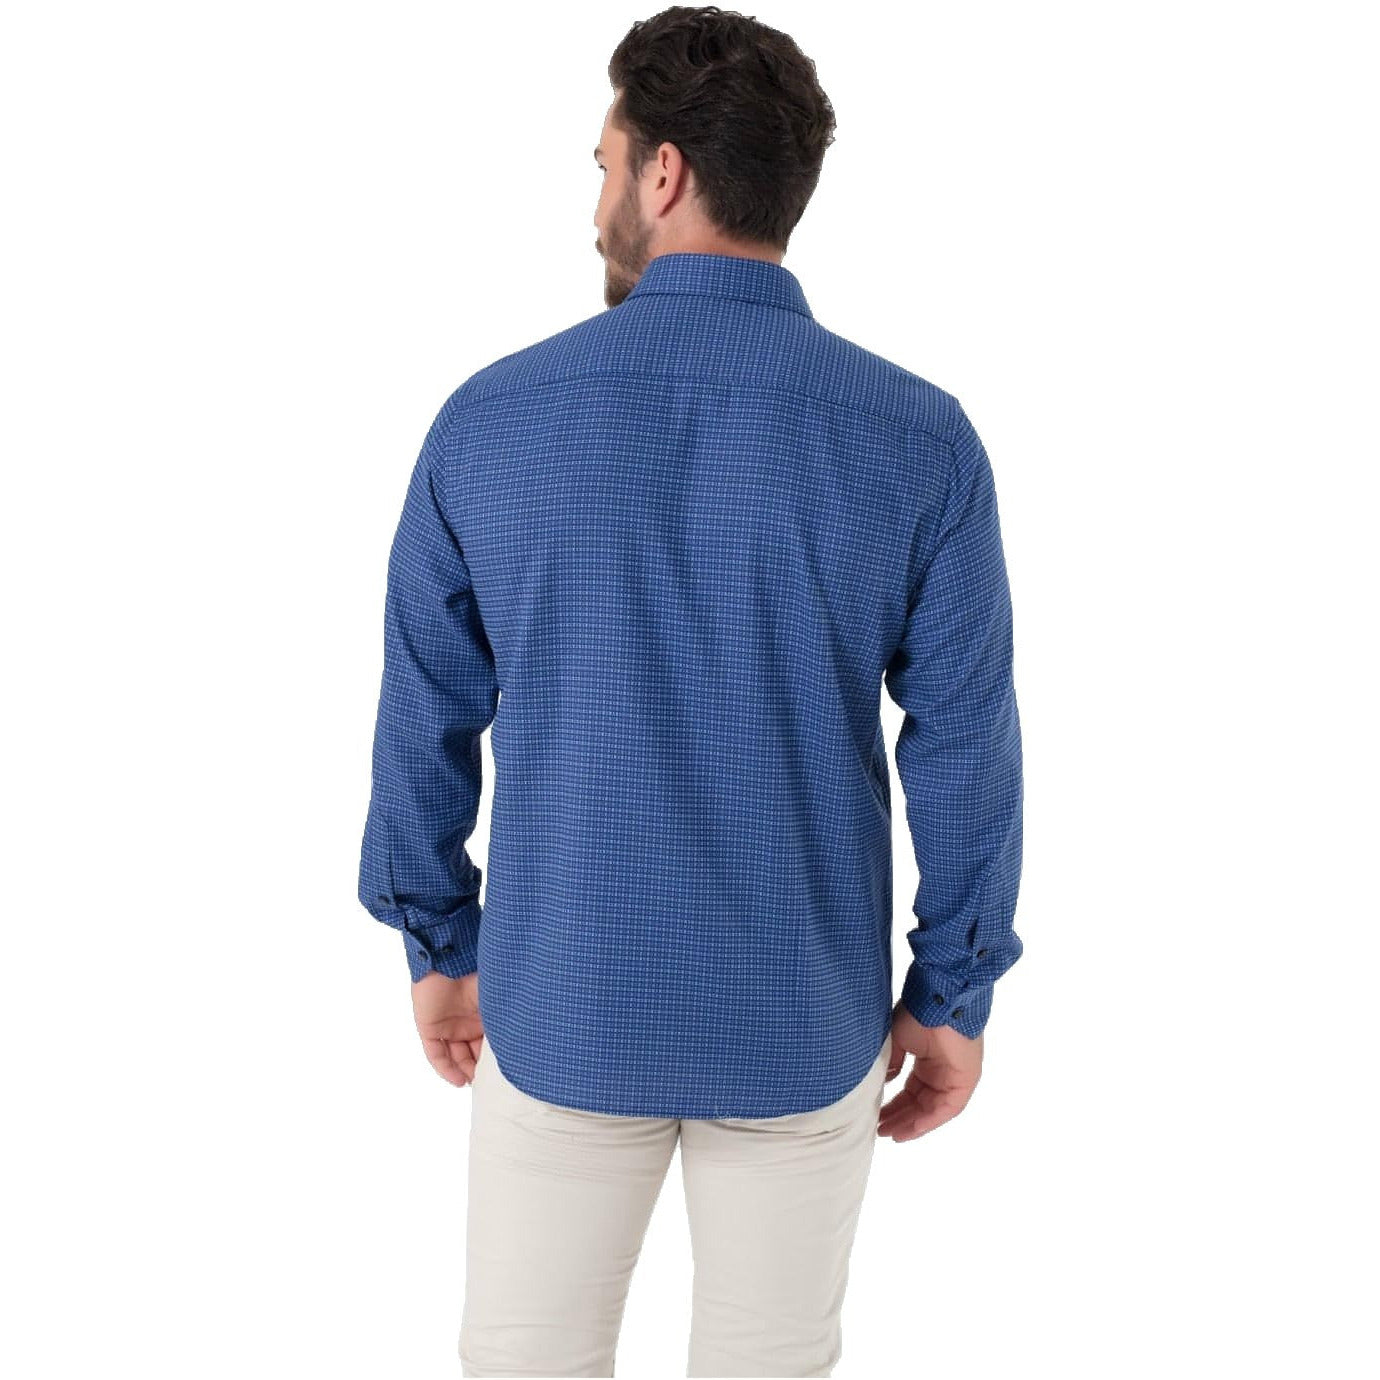 WB Excellent Overhemd Heren Regular Fit Blauw Patroon